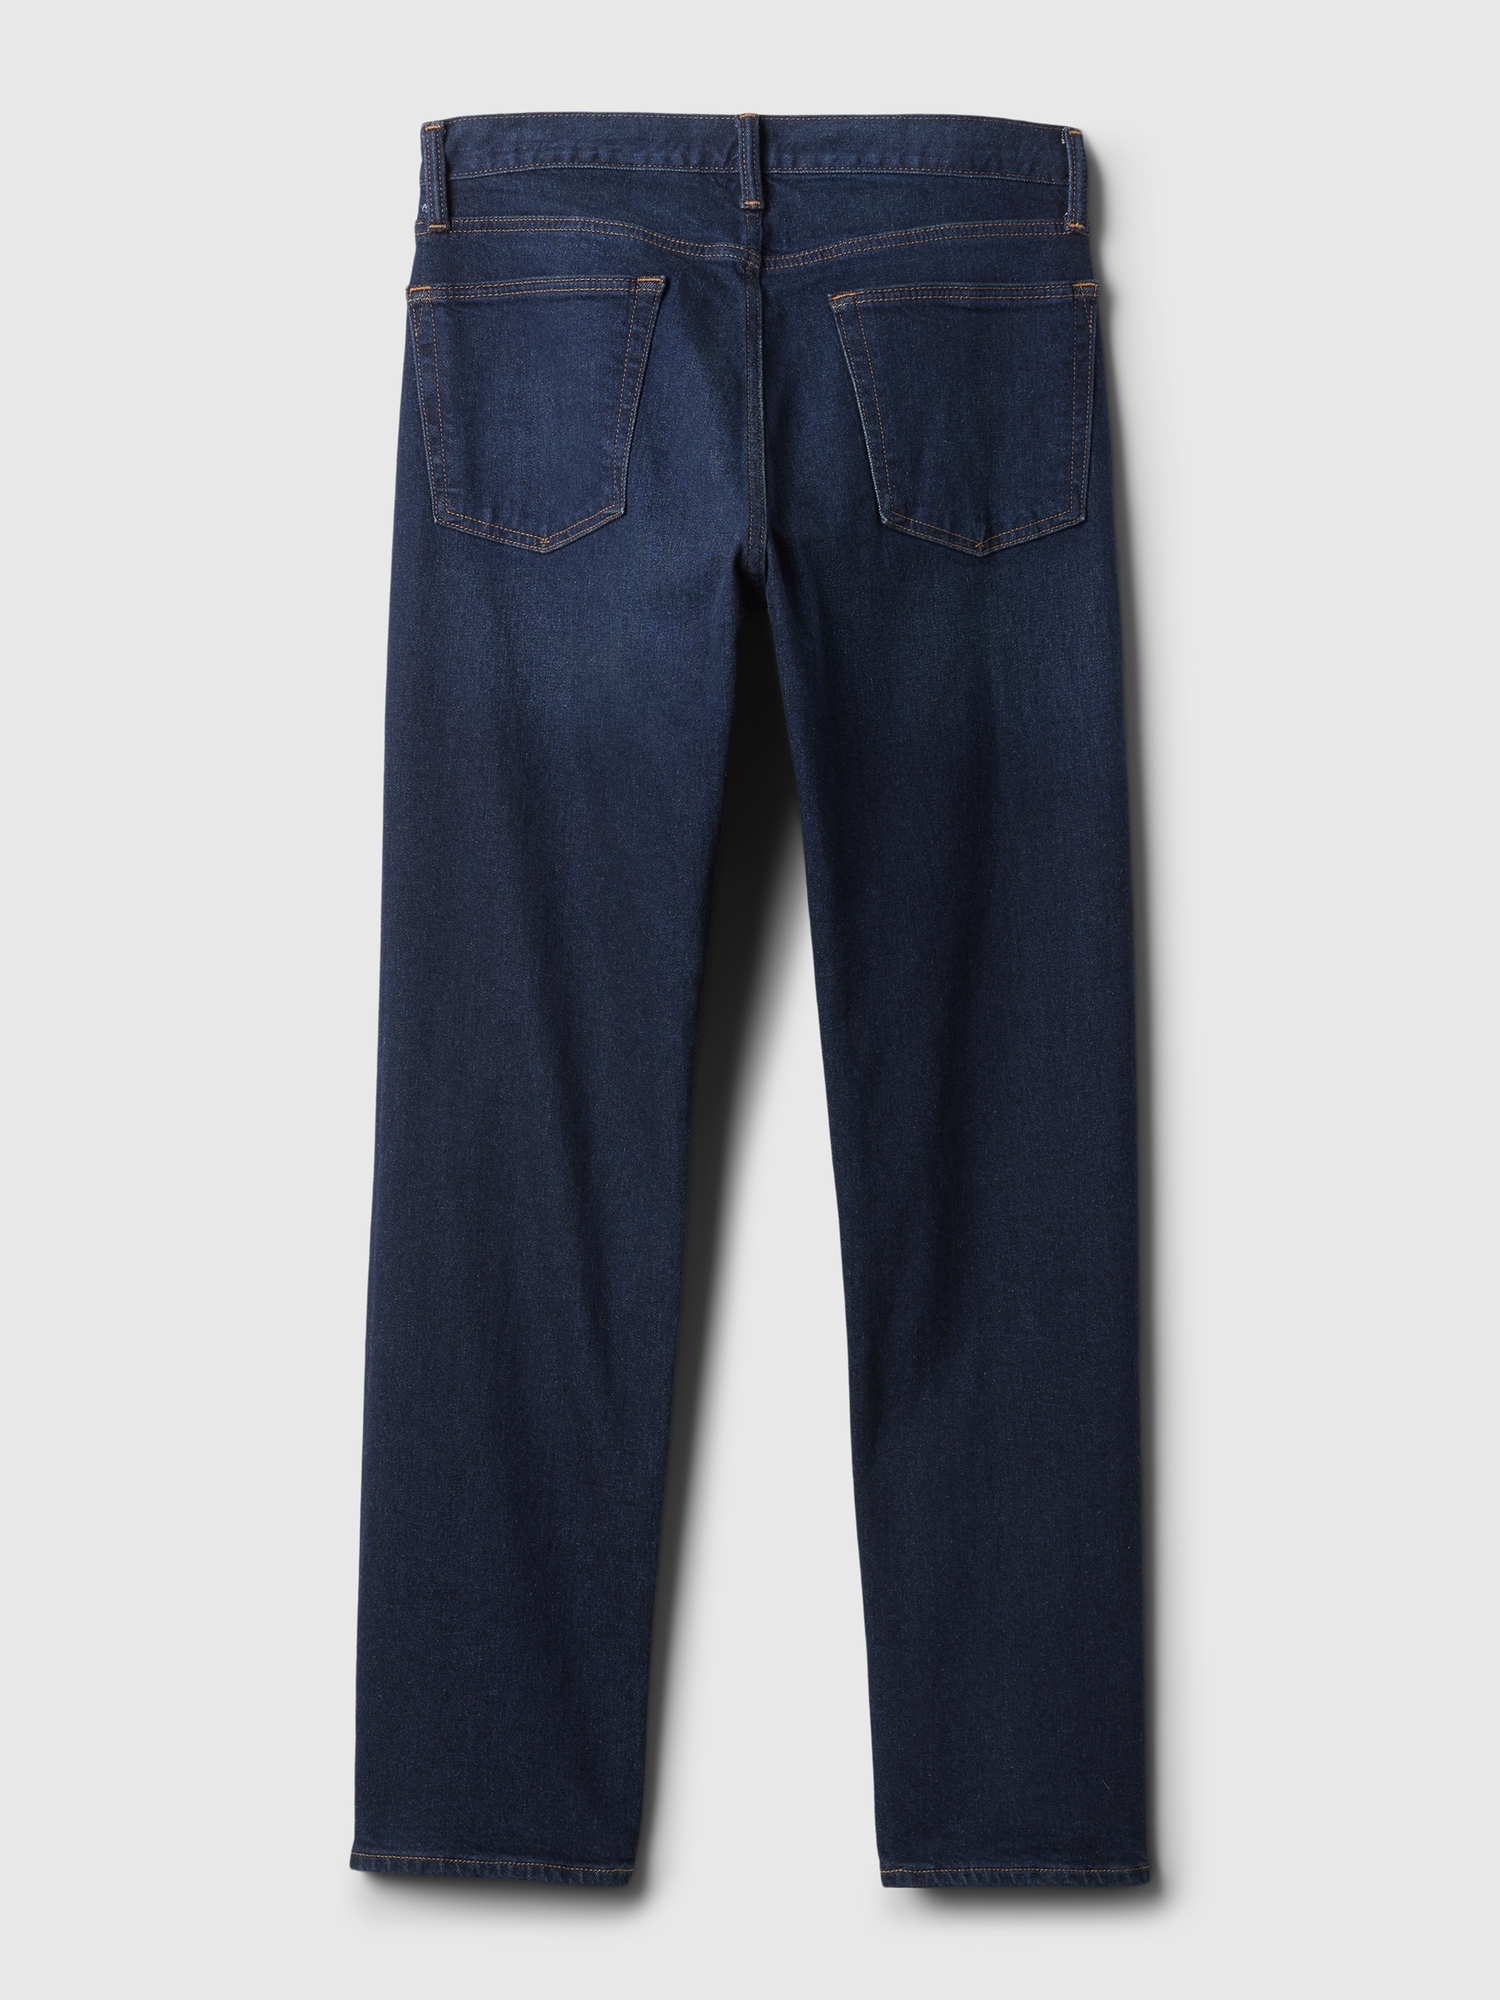 Mens 32 x 30 Relaxed Taper GapFlex Denim Pants Jeans Rinsed 2e12